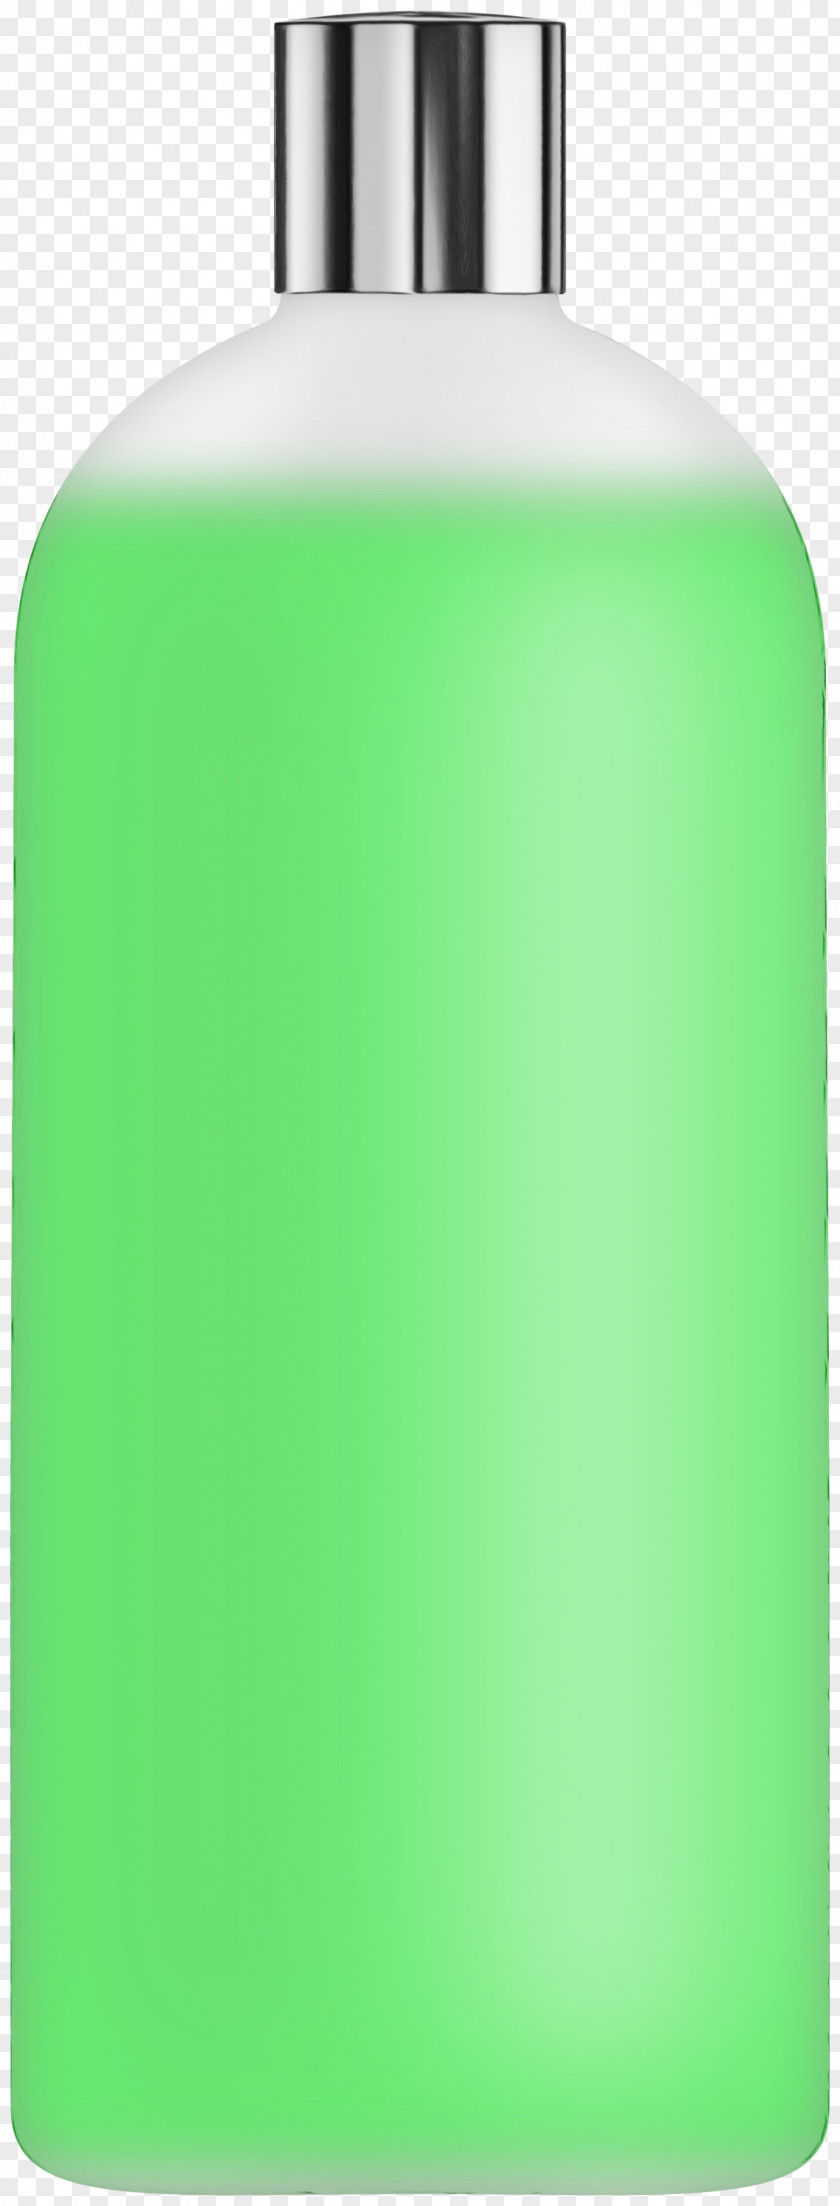 Glass Bottle Perfume Soap Dispenser Green PNG